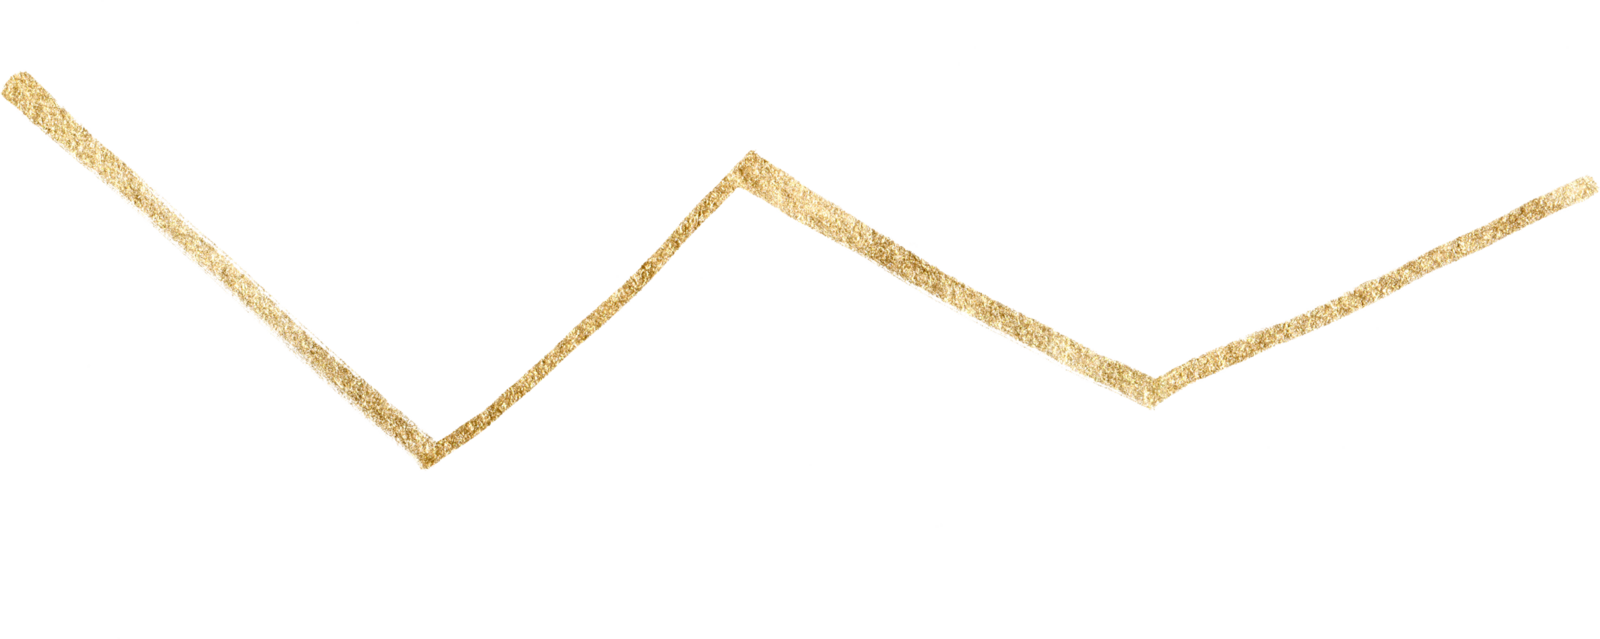 gold metallic zig zag